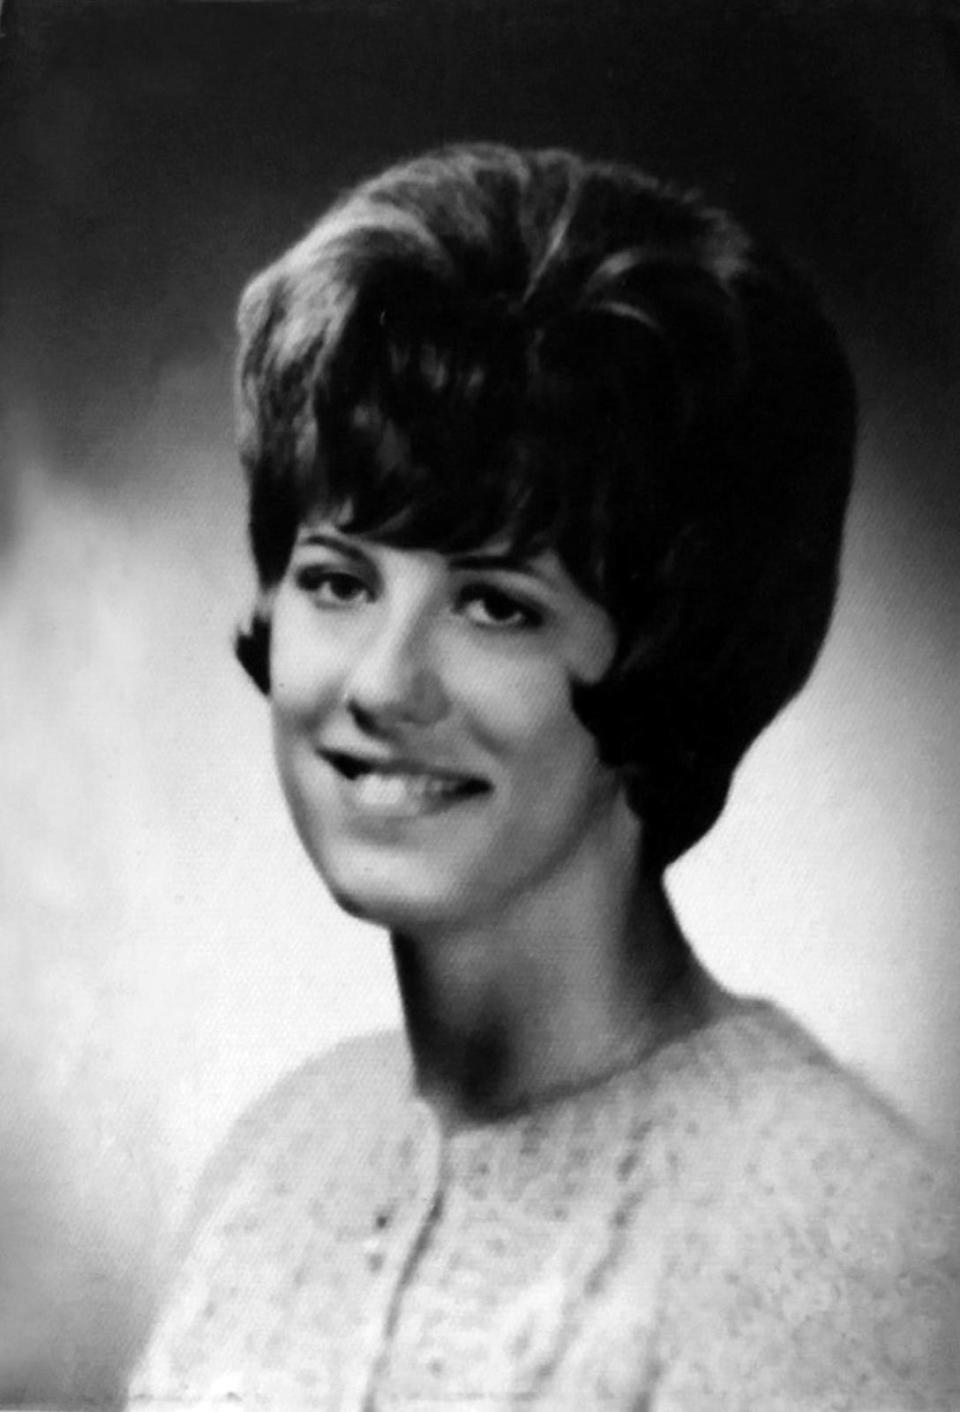 Diane Olkwitz is shown in her senior portrait from Menomonee Falls High School, Class of 1965.